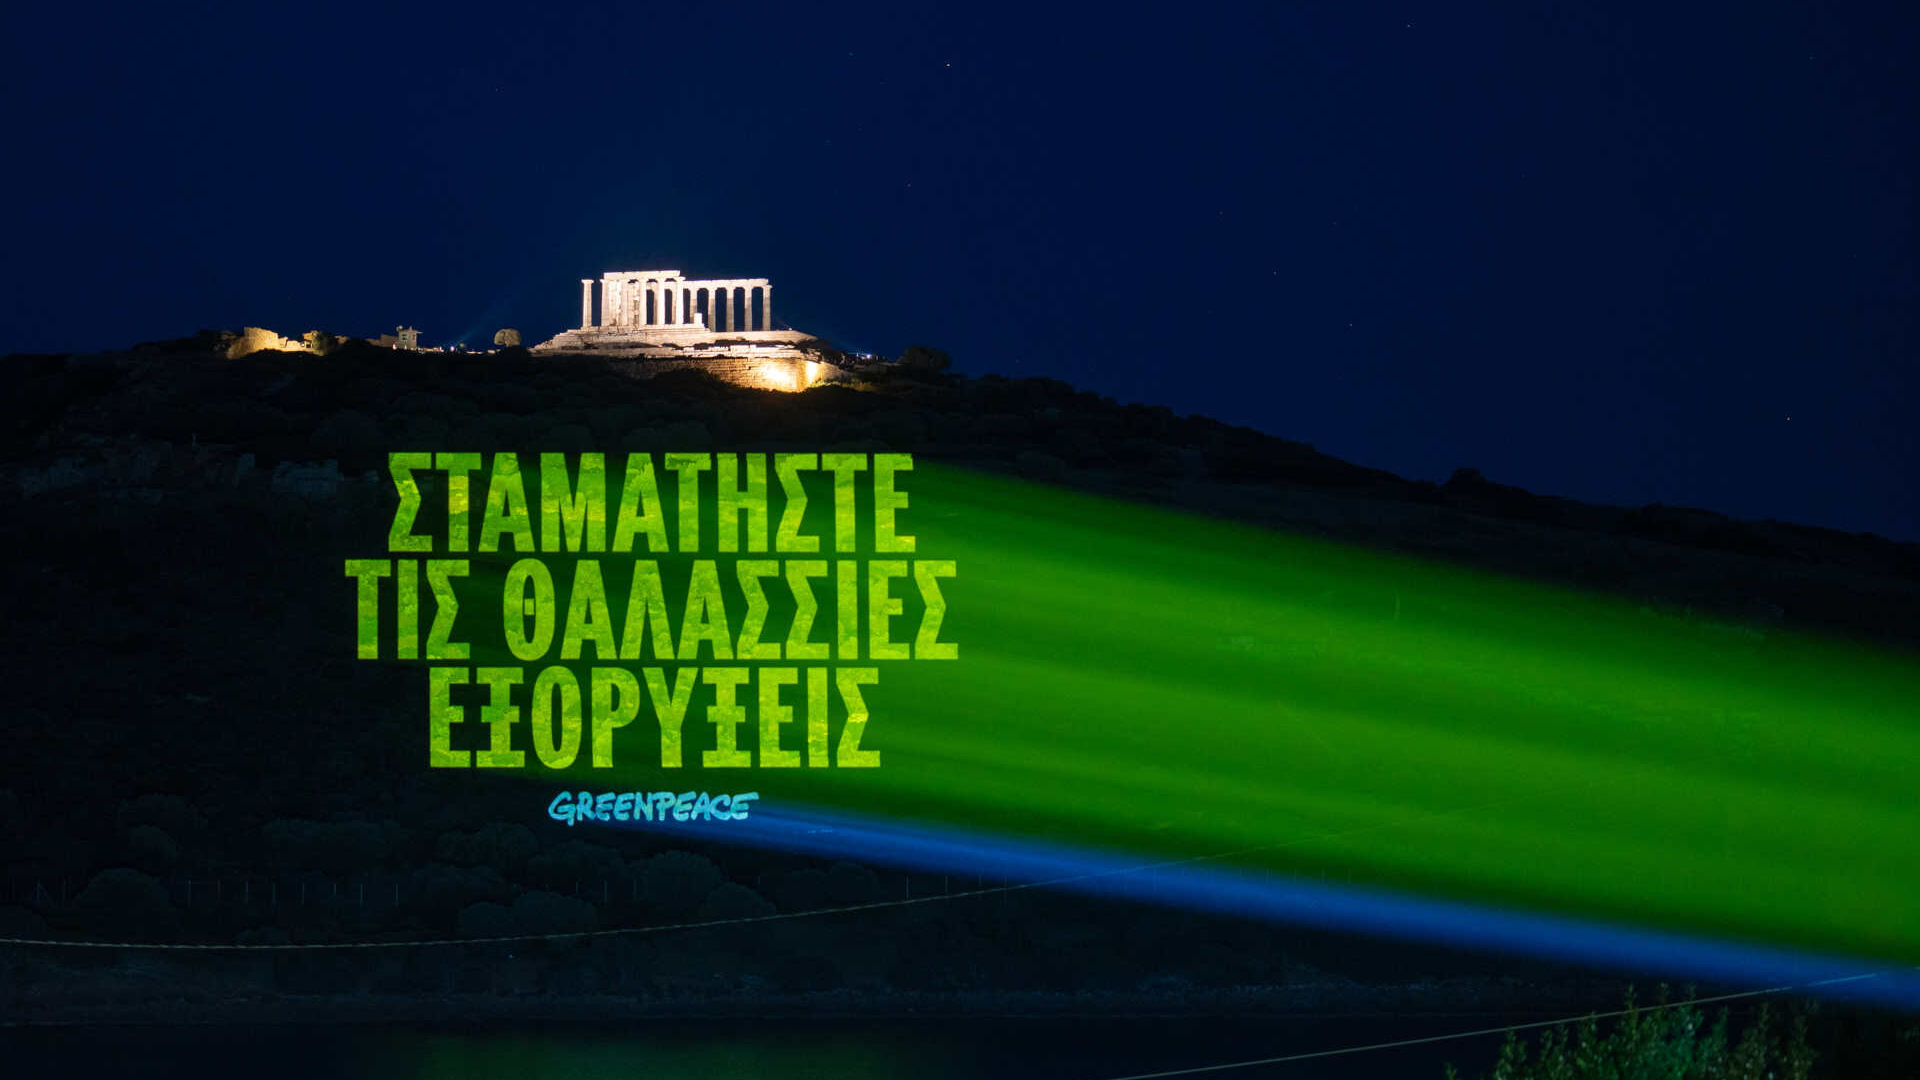 Hy Lạp: thông điệp bằng tiếng Hy Lạp có nội dung